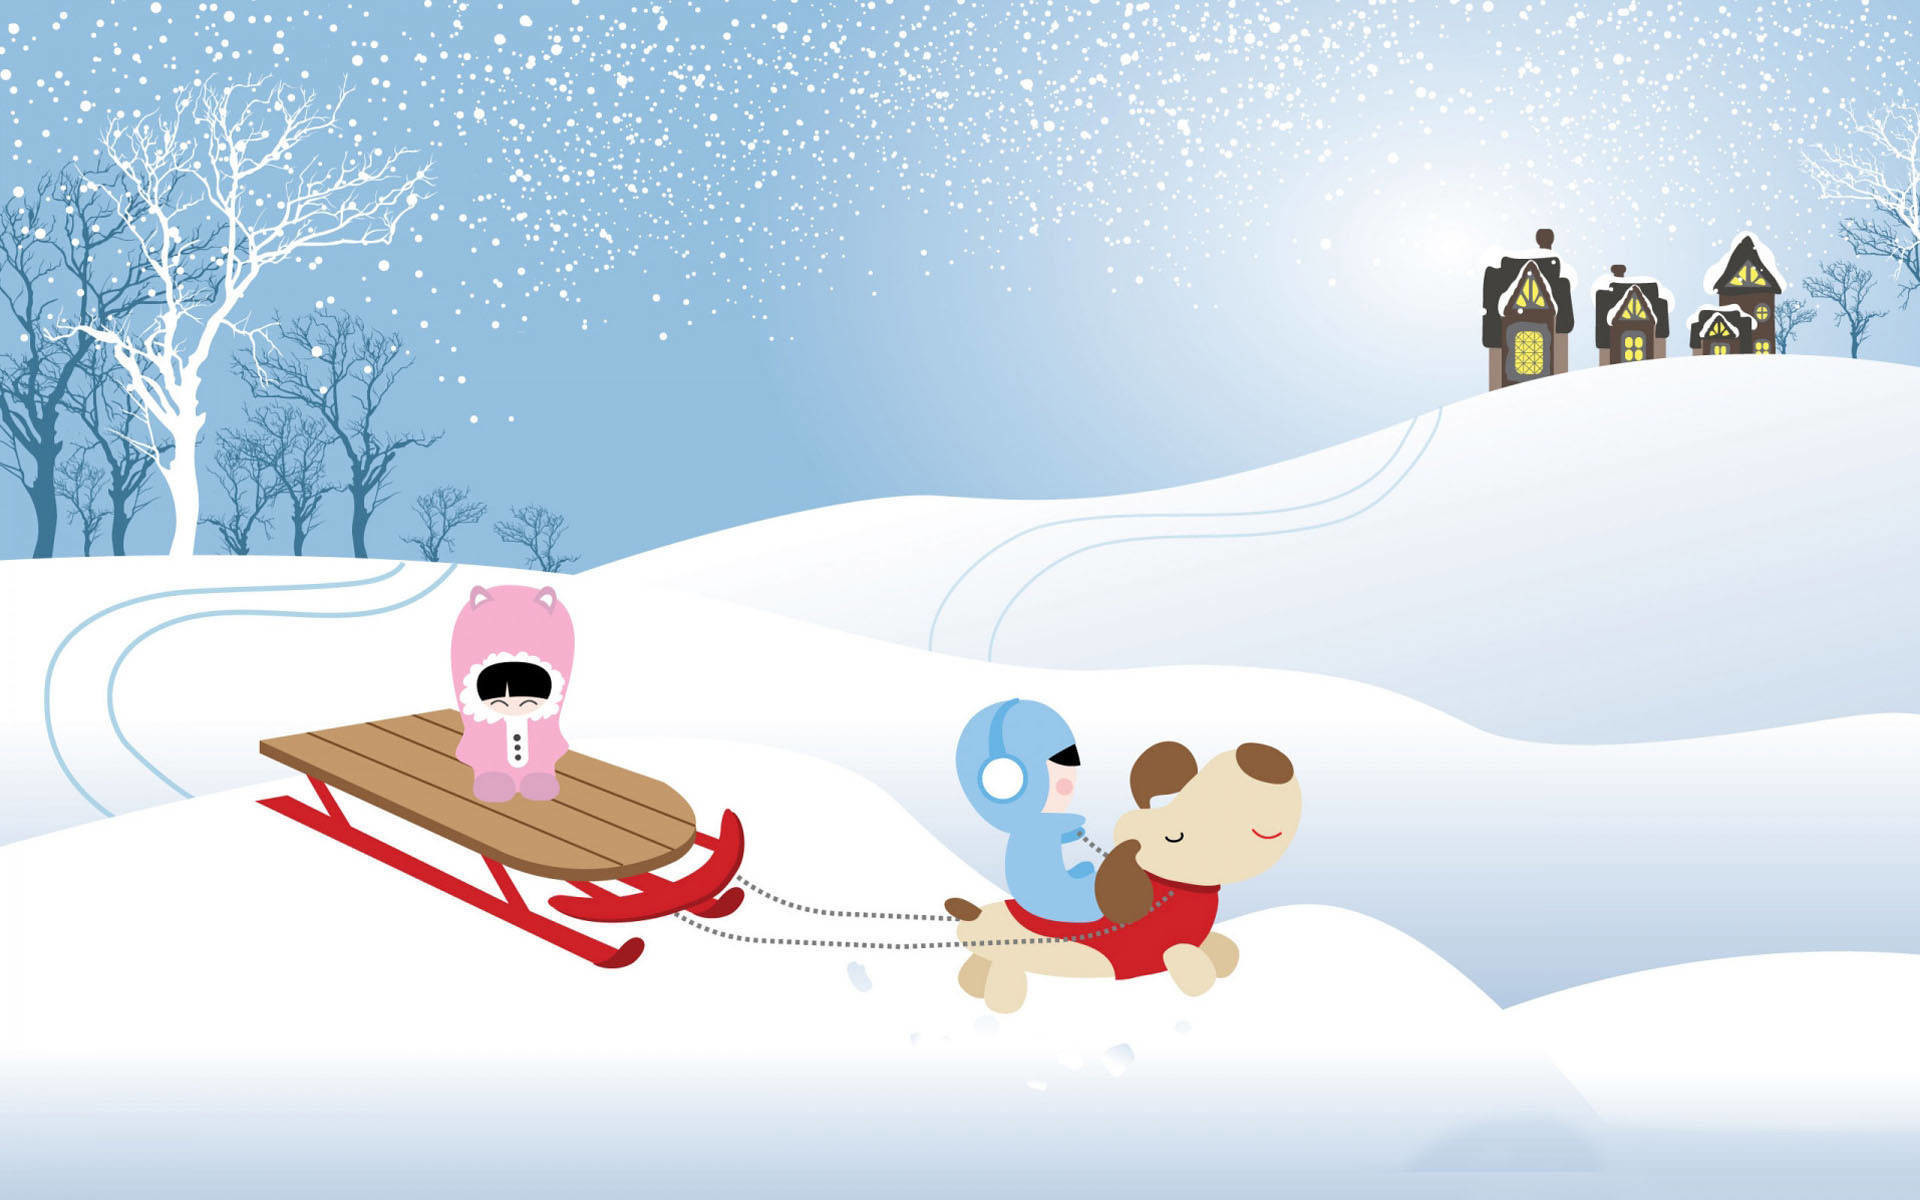 Christmas cartoon snowfall wallpaper. Christmas images Christmas cartoon  snowfall 728×409.jpg Resolution:…